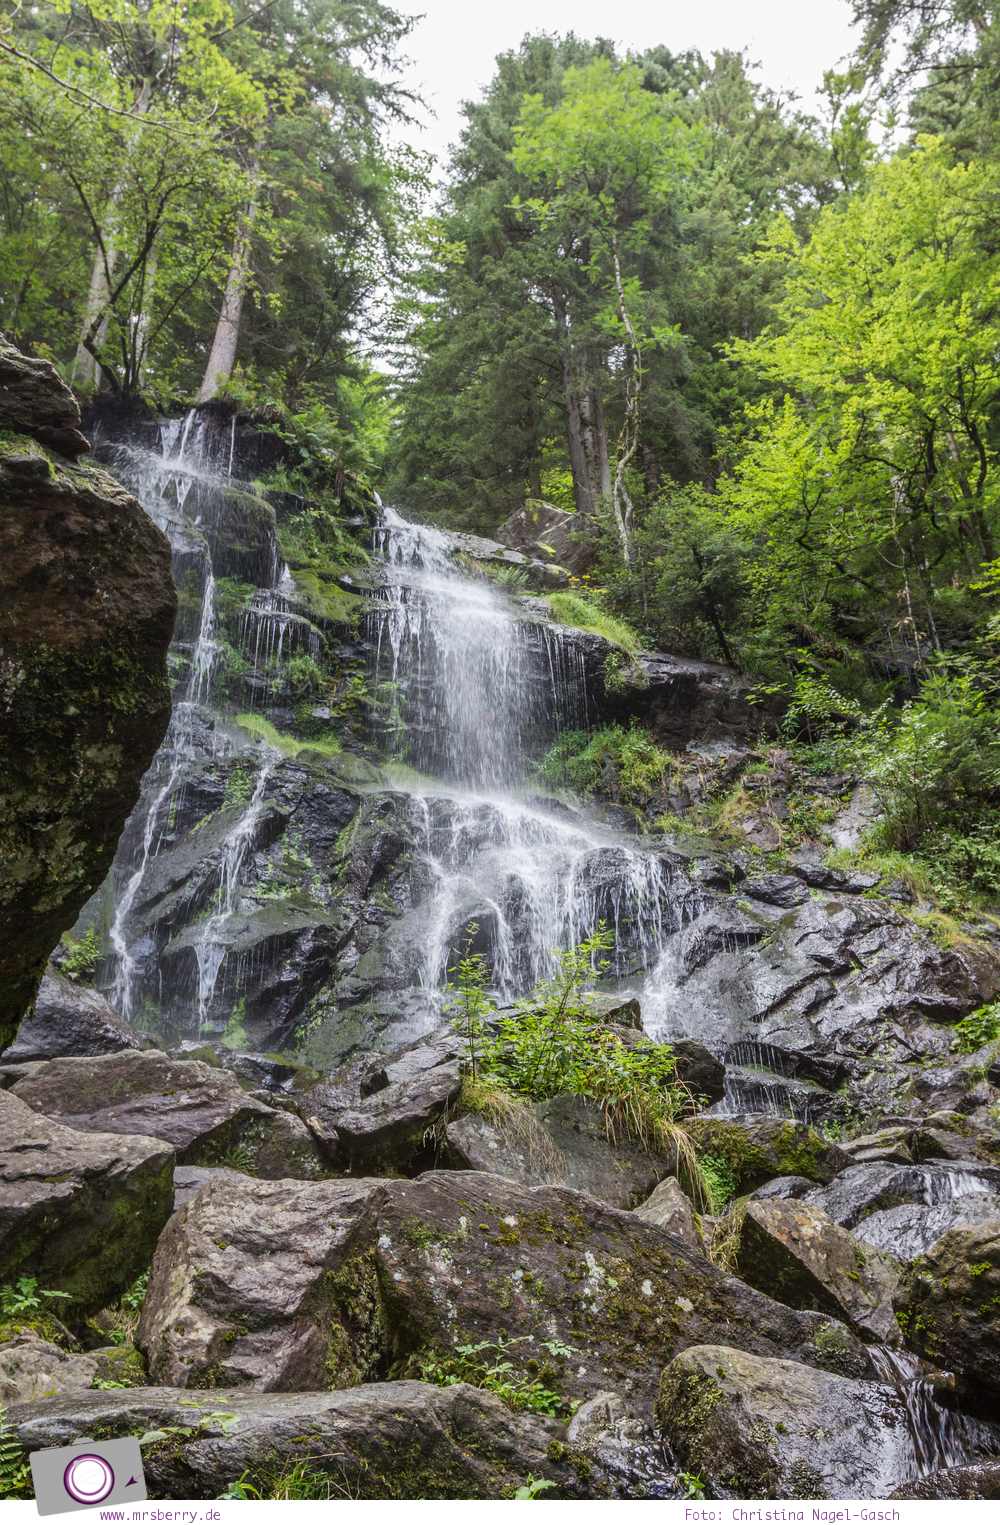 ZweiTälerLand im Schwarzwald: Wanderung zum Zweribach-Wasserfall